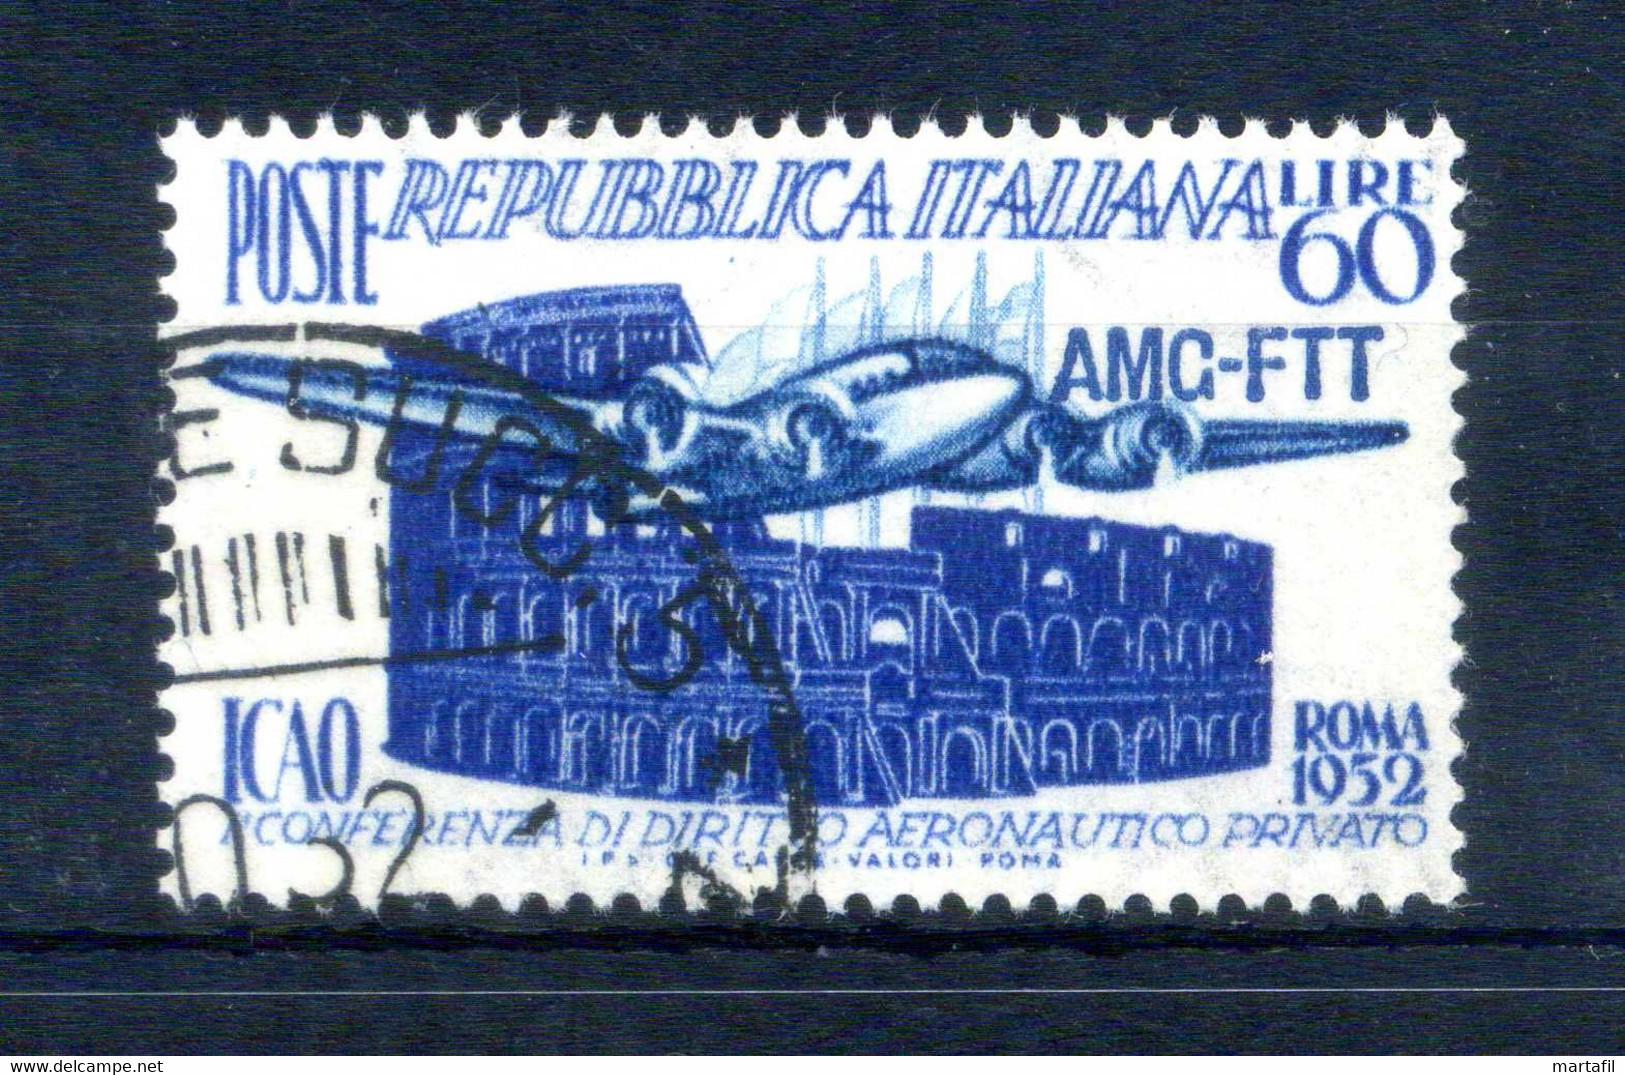 1952 Trieste Zona A S155 Usato, 1° Conferenza Di Diritto Aeronautico Privato ICAO - Afgestempeld